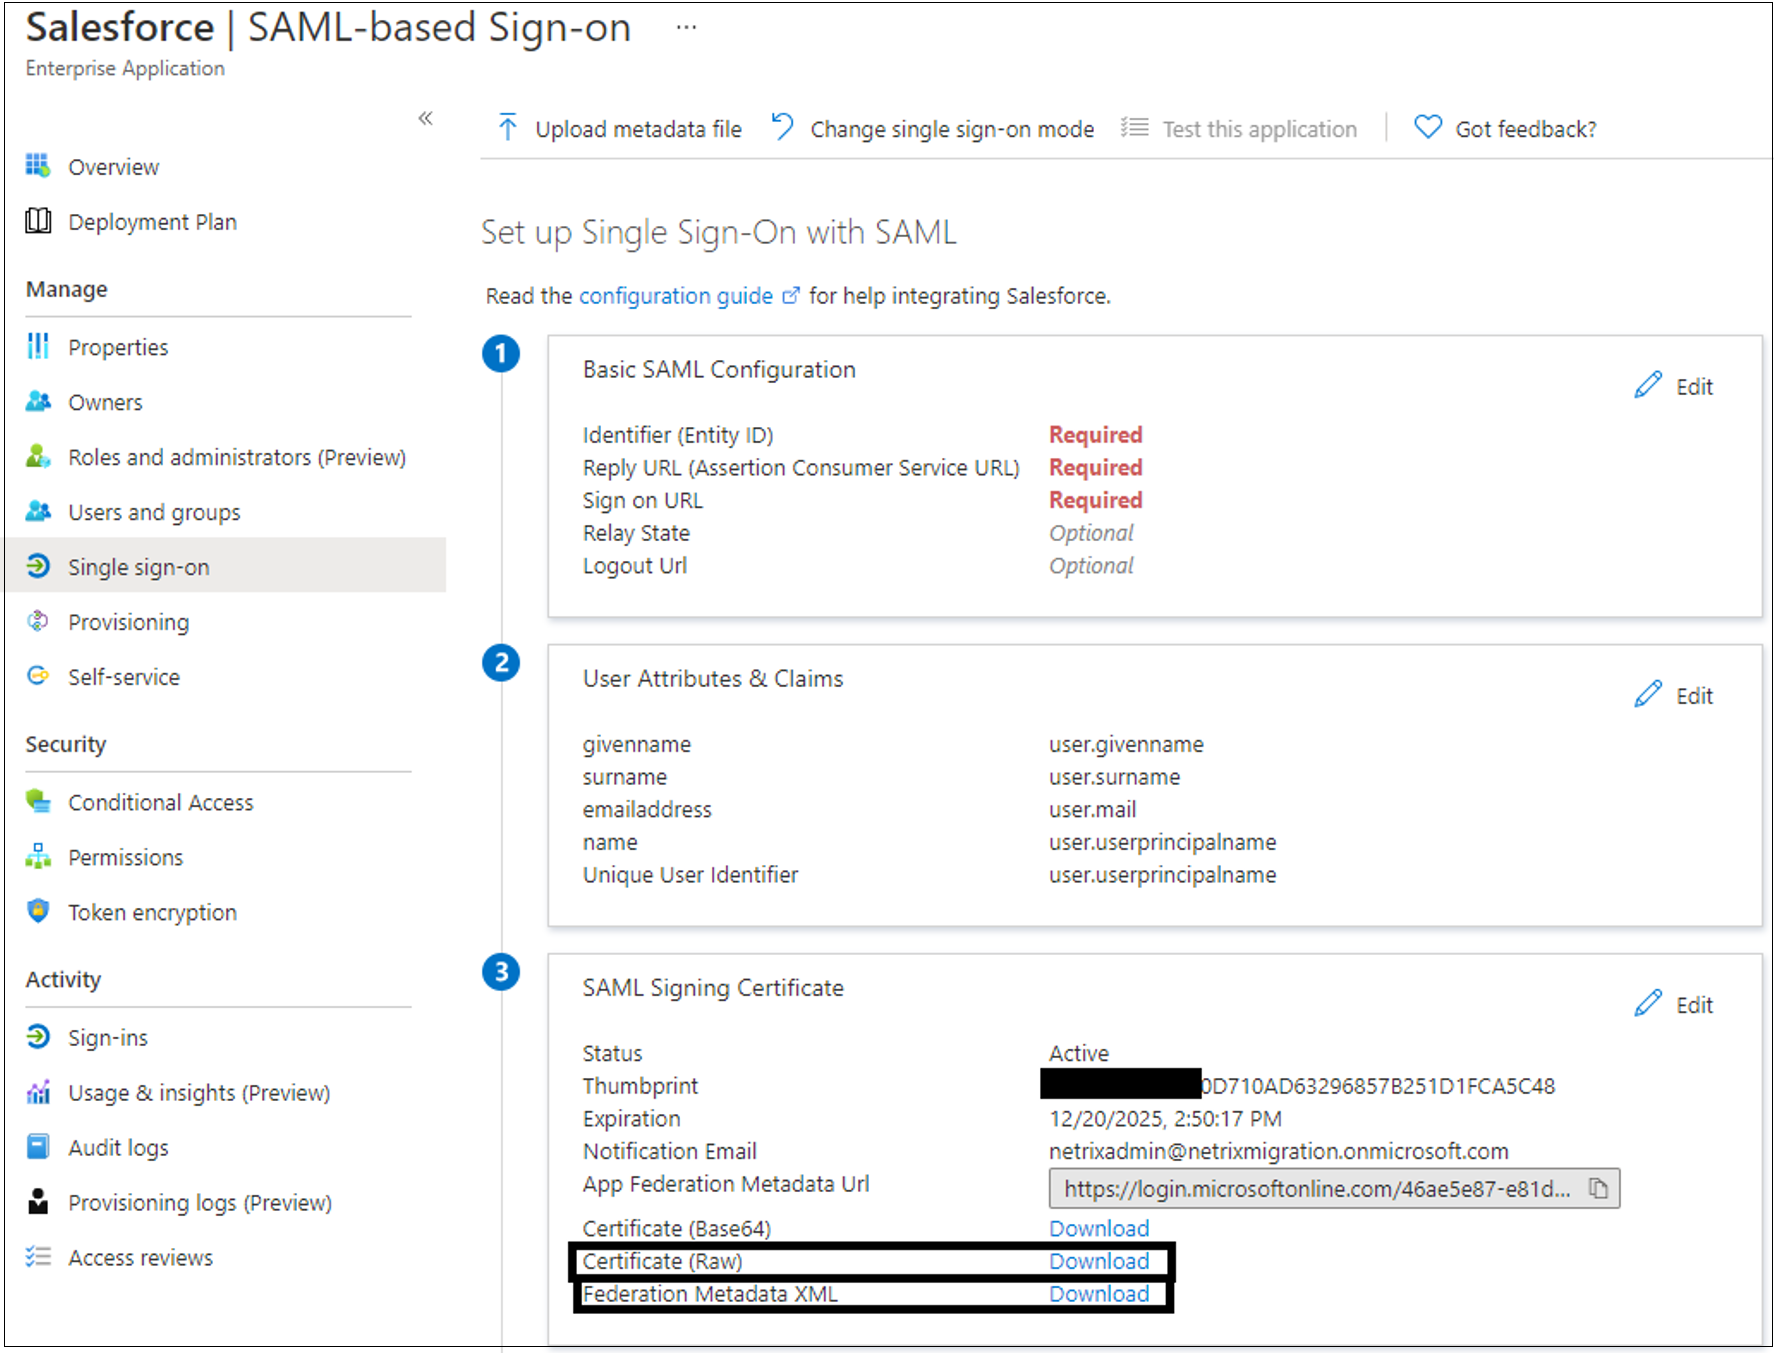 Snímek obrazovky s položkami XML certifikátů (nezpracovaných) a federačních metadat v rámci podpisového certifikátu SAML